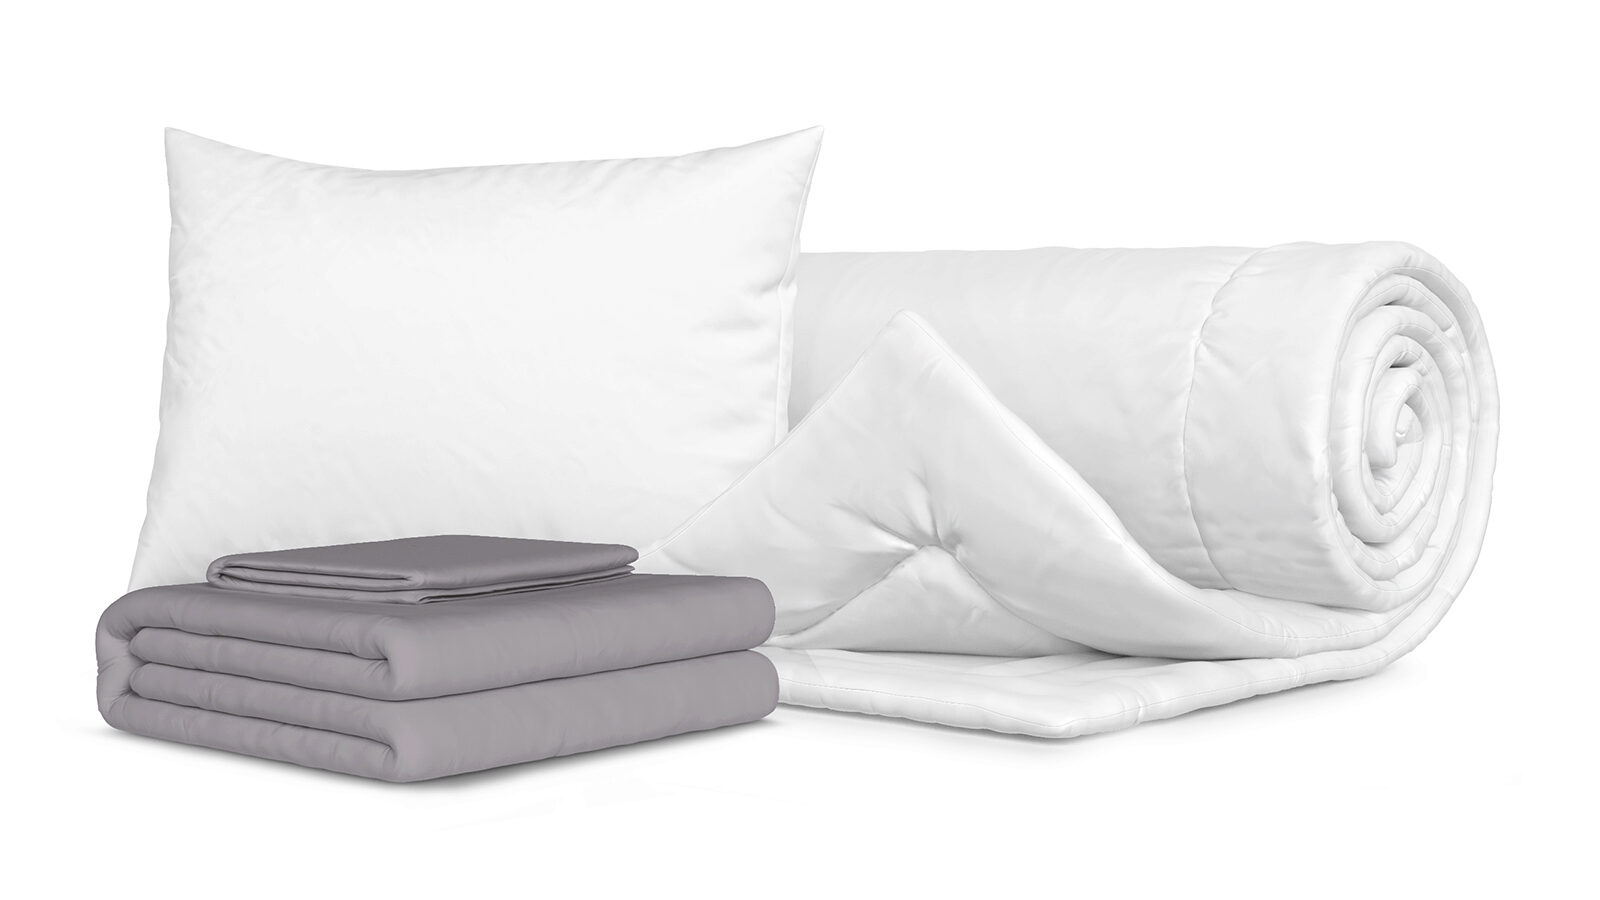 Комплект Одеяло Beat + Подушка Sky + Комплект постельного белья Comfort Cotton, цвет: Светло-серый